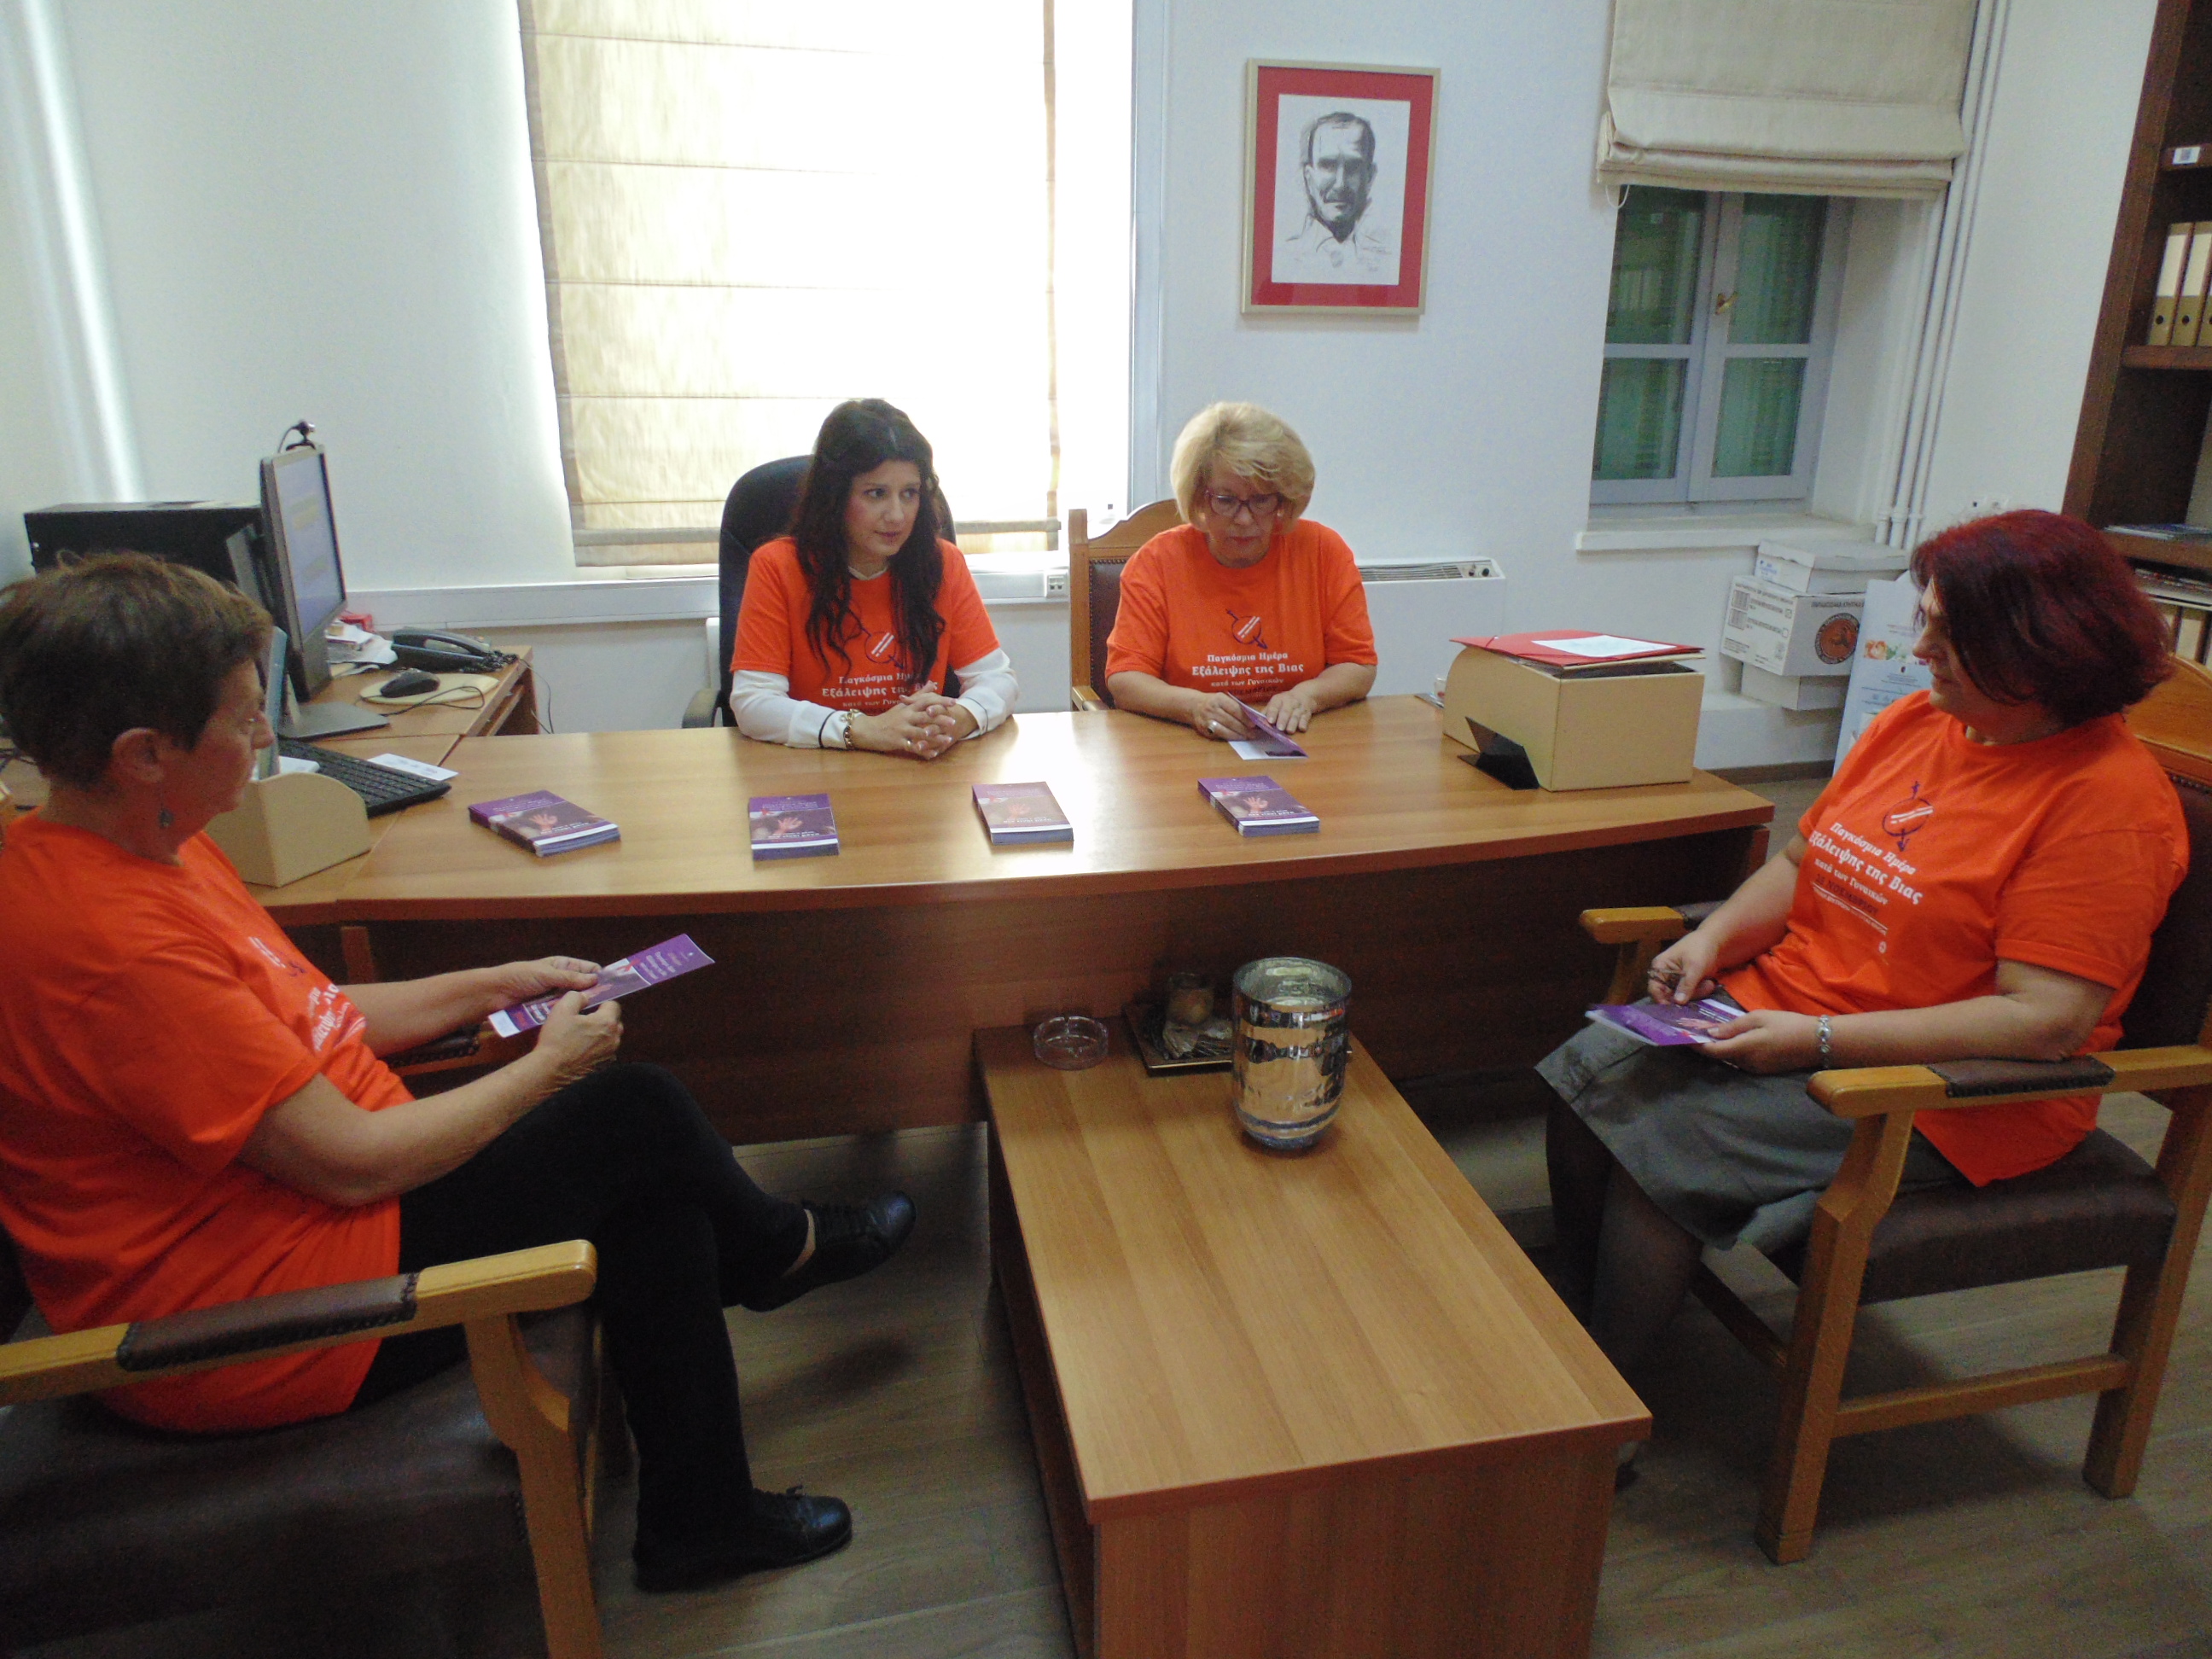 Τέσσερις ημερίδες στο νησί από την Επιτροπή Ισότητας των Φύλλων της Περιφέρειας Κρήτης για την εξάλειψη της βίας κατά των γυναικών